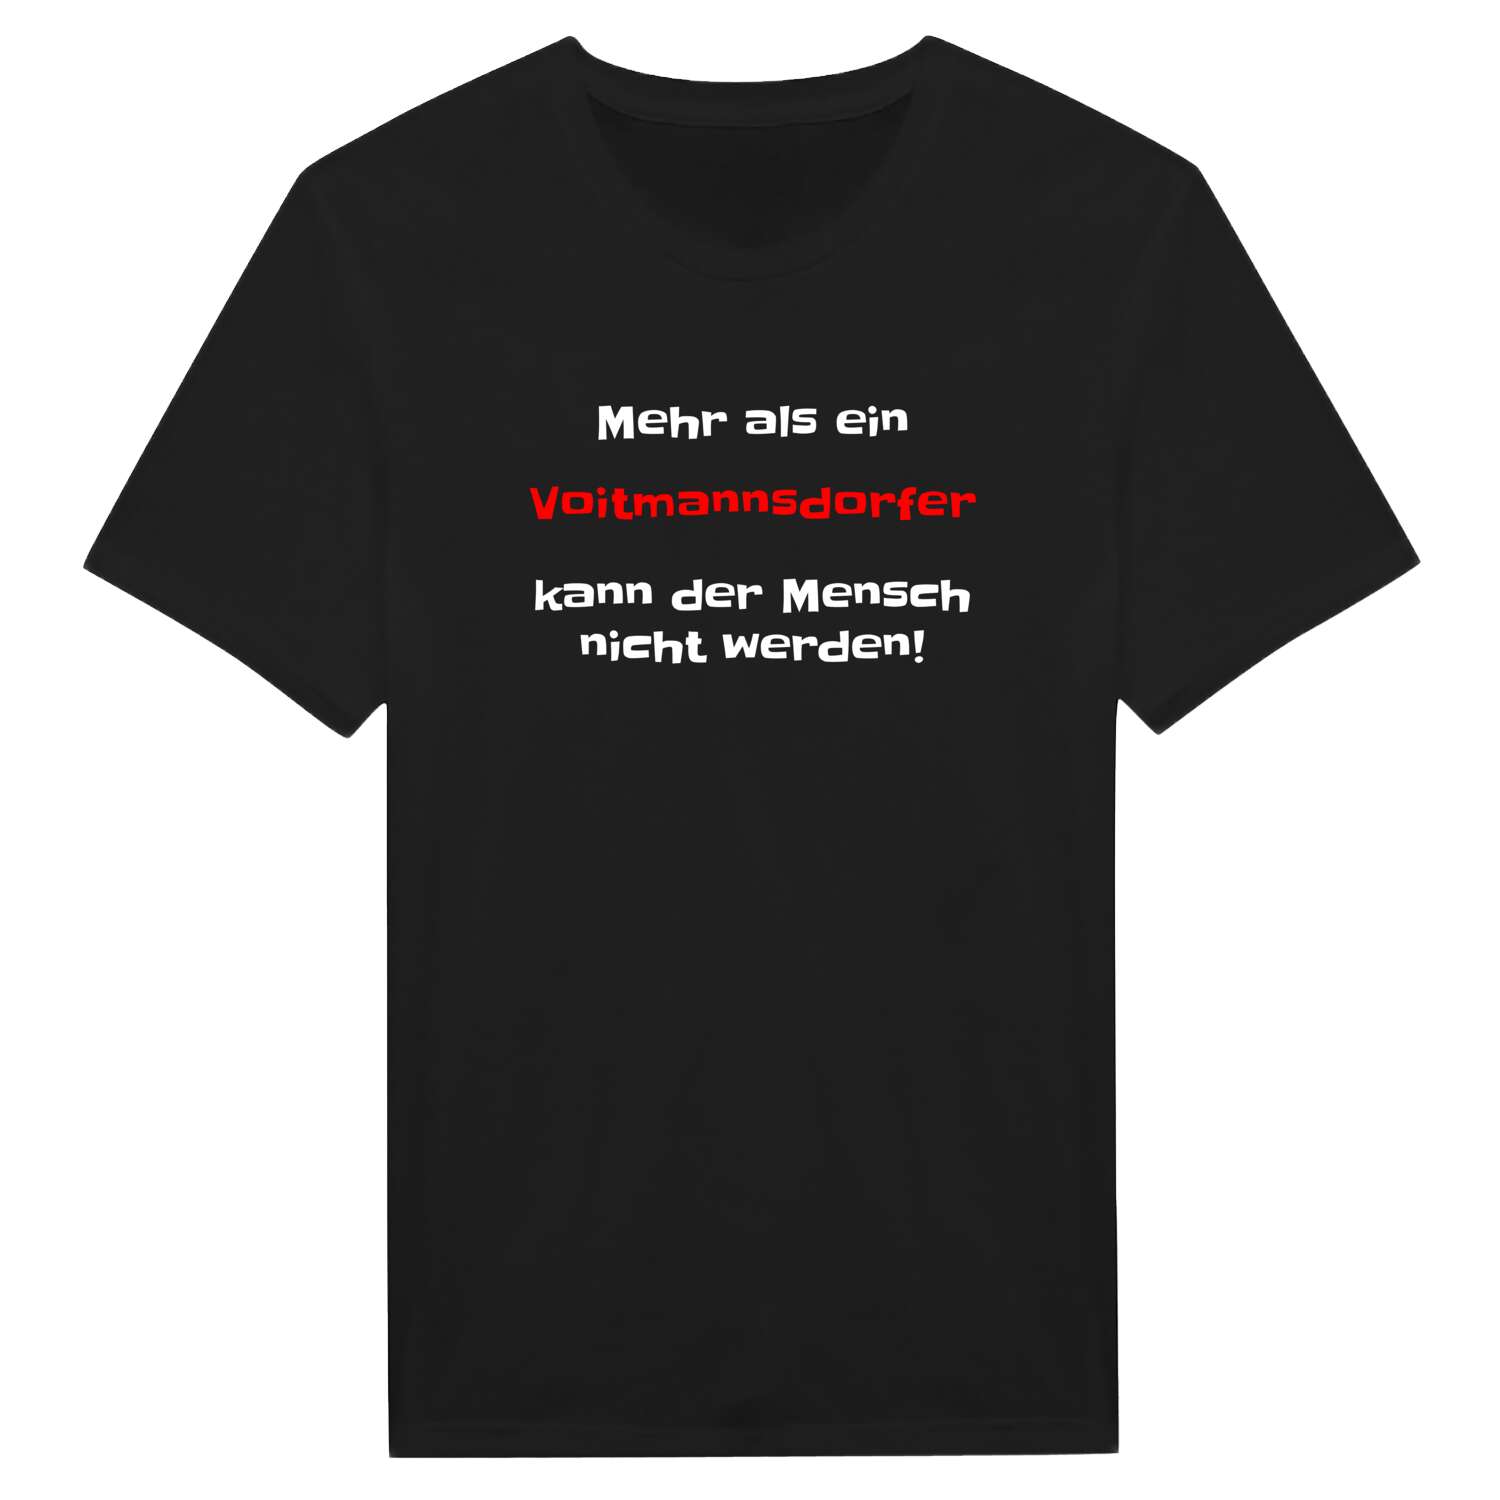 Voitmannsdorf T-Shirt »Mehr als ein«